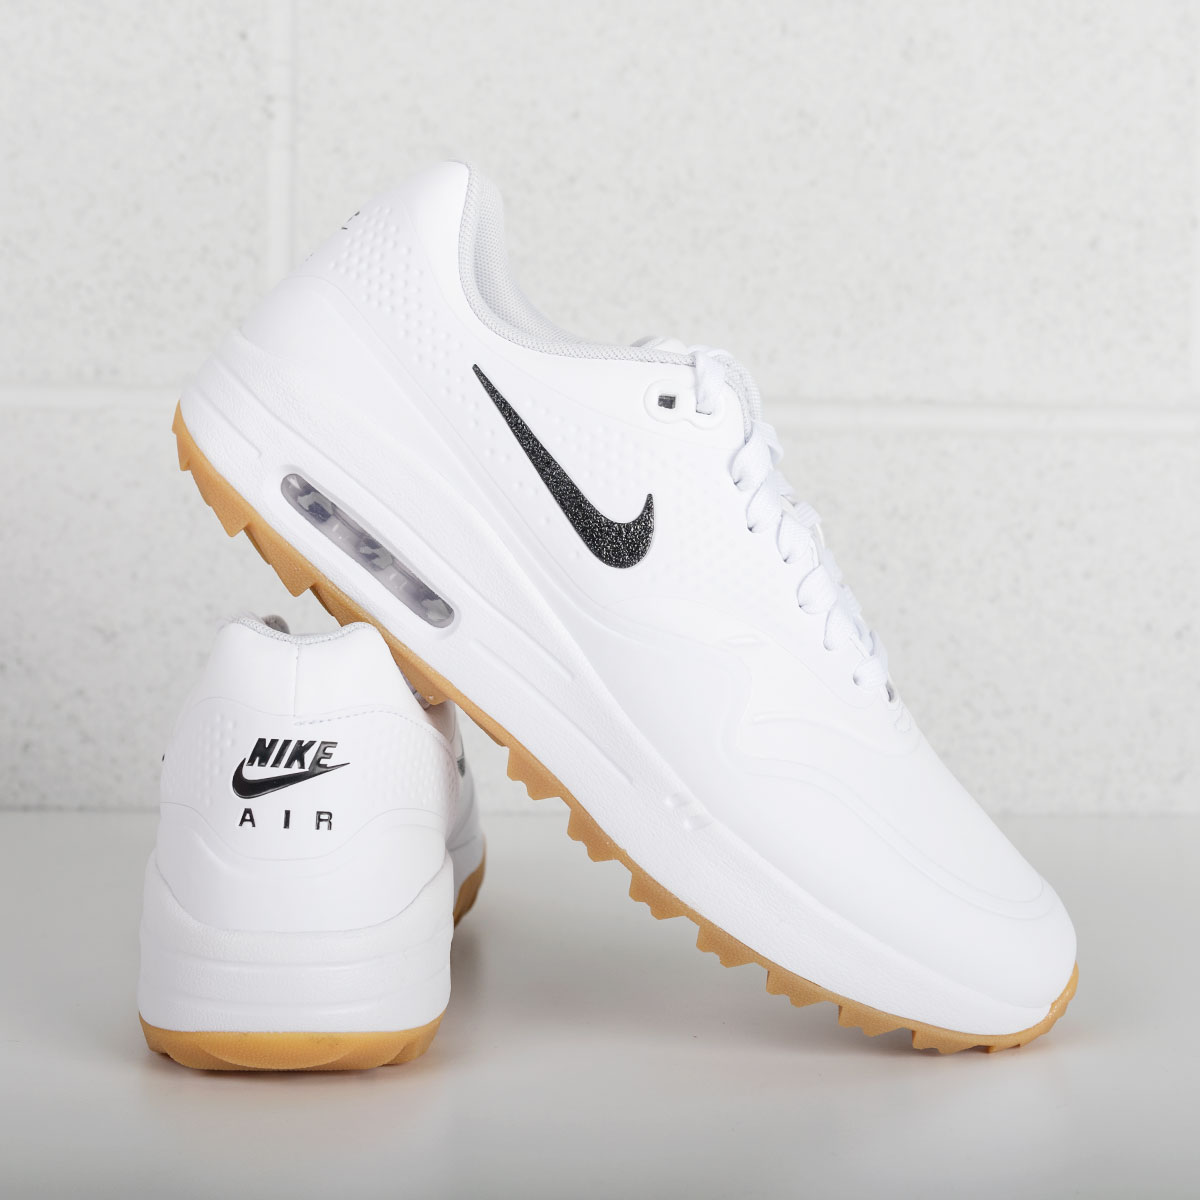 nike golf shoes - air max 1g - white 2019